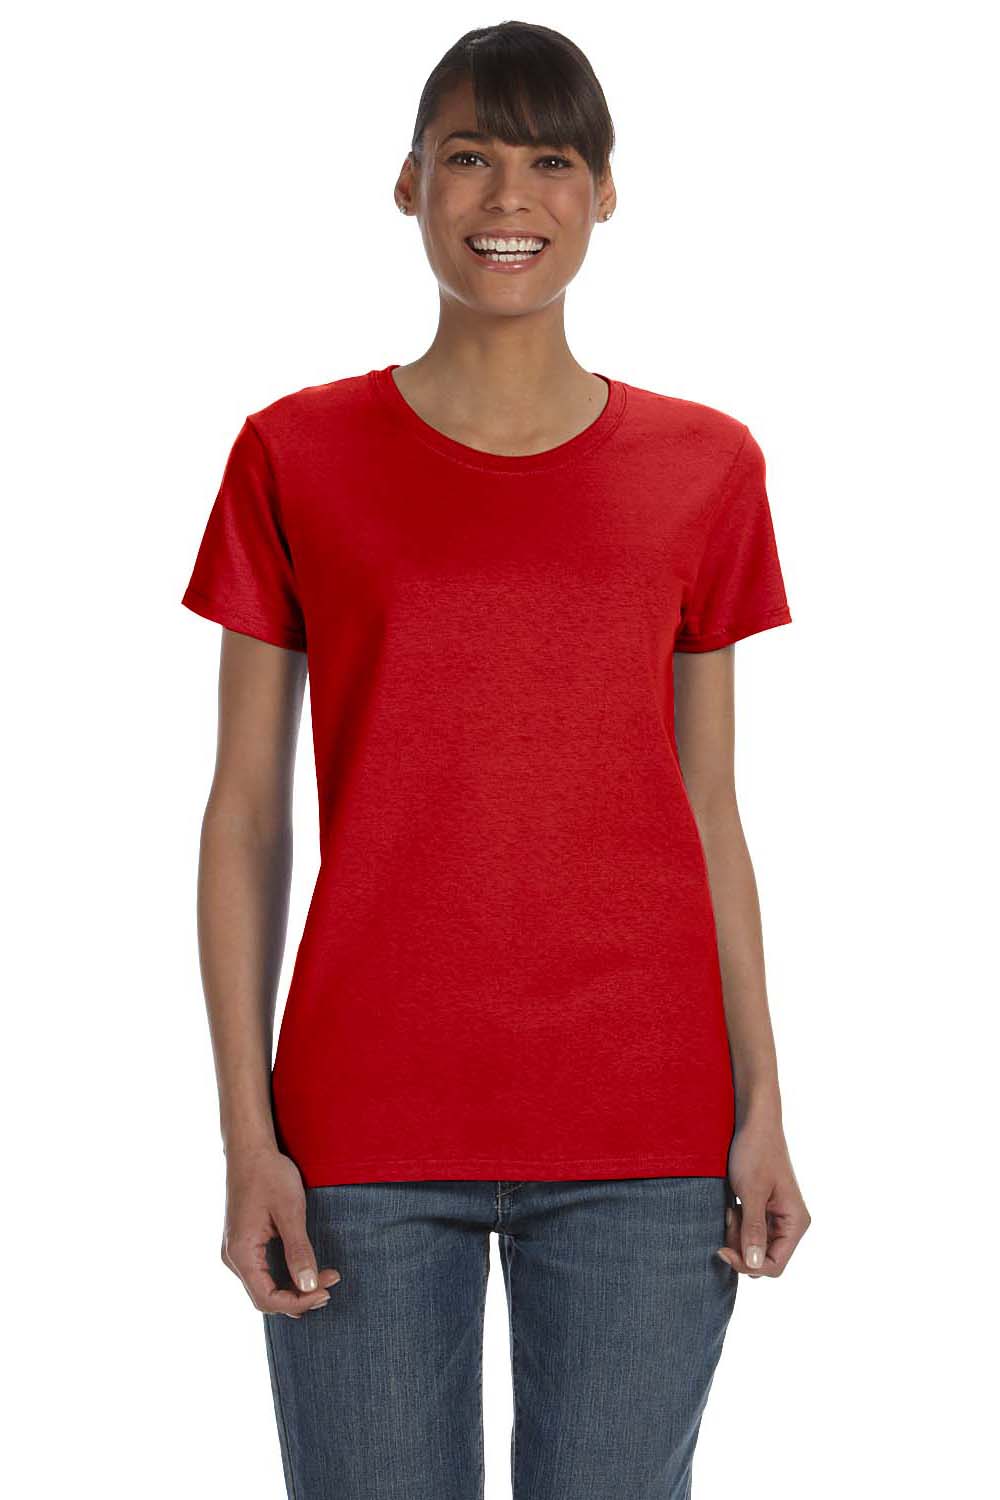 Gildan G500L Womens Short Sleeve Crewneck T-Shirt Red Front